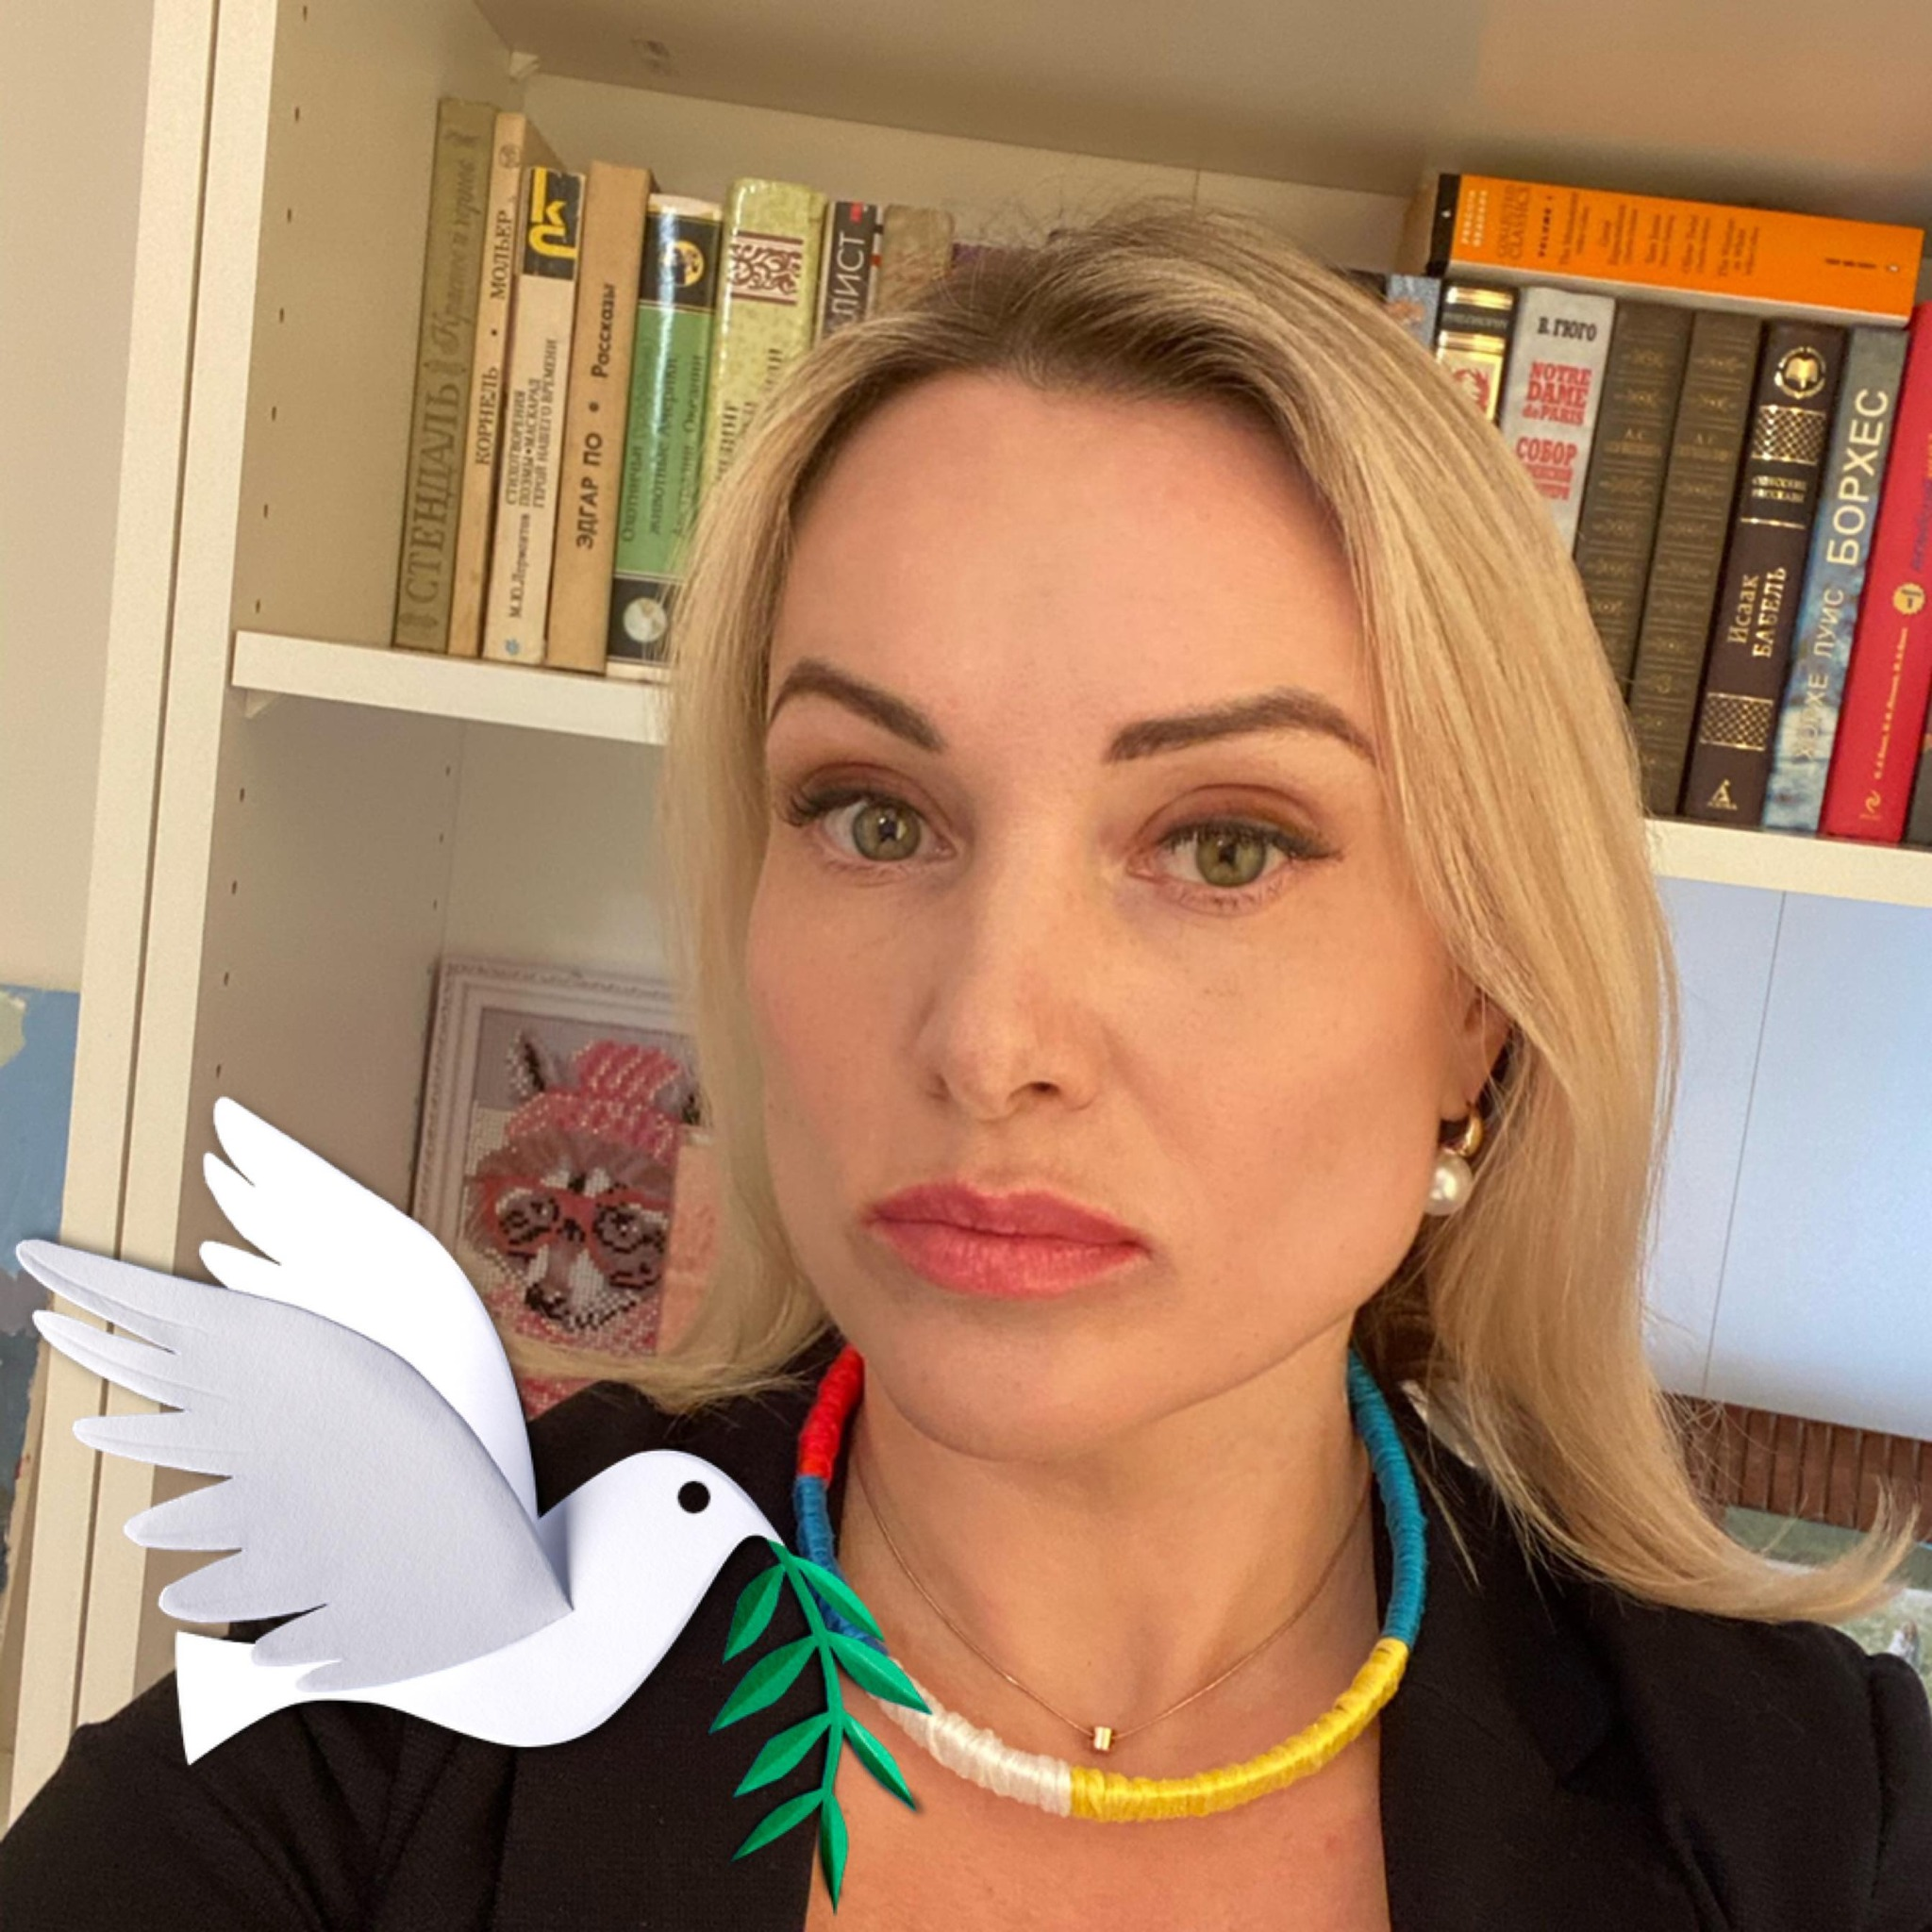 Jurnalista rusă Marina Ovsyannikova este din nou arestată